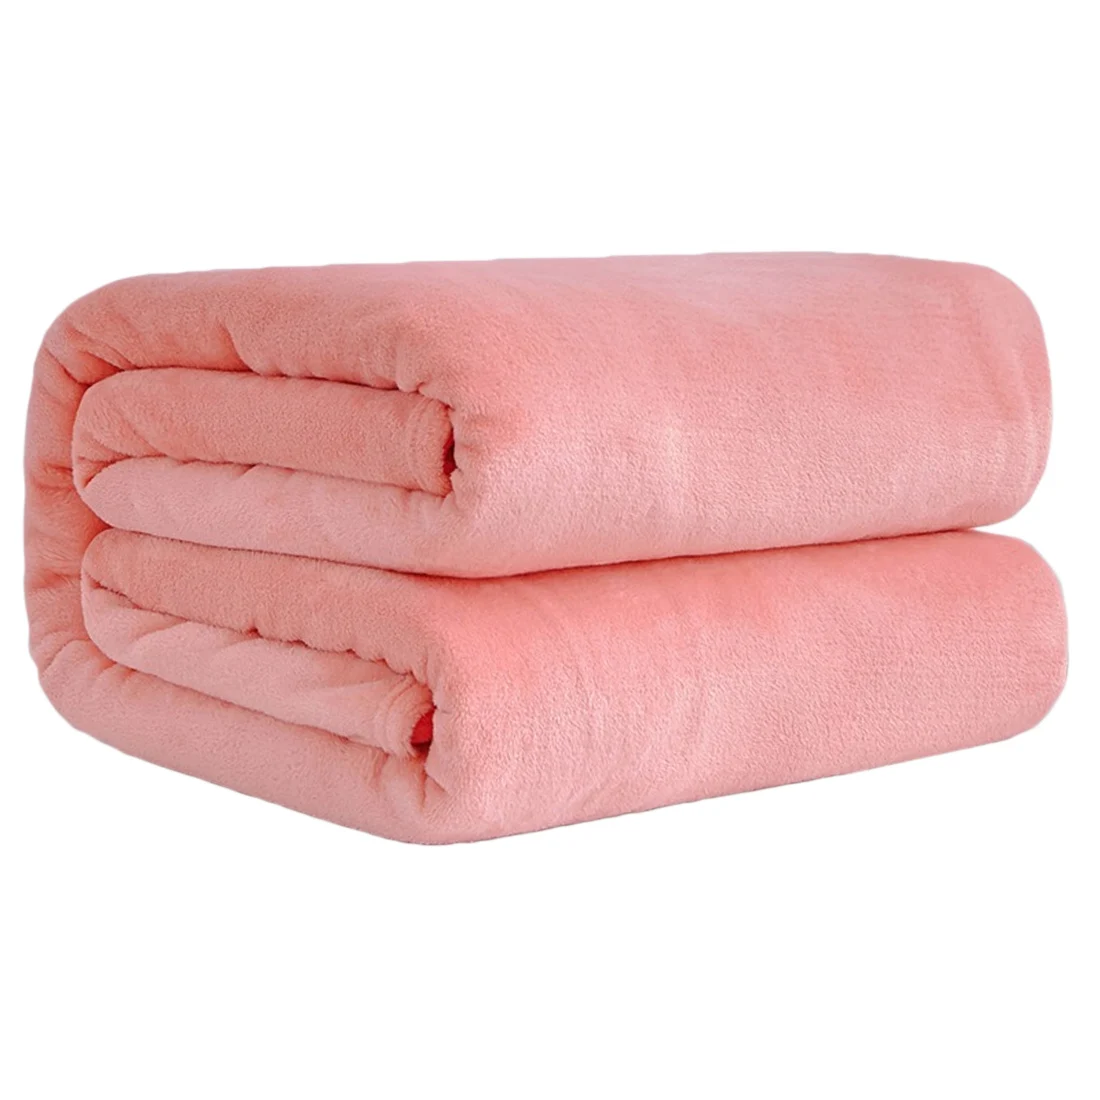 Домашний текстиль одноцветное Фланелевое Коралловое Флисовое одеяло розовое супер мягкое одеяло диван/кровать/Самолет путешествия лоскутное одноцветное - Цвет: Jade